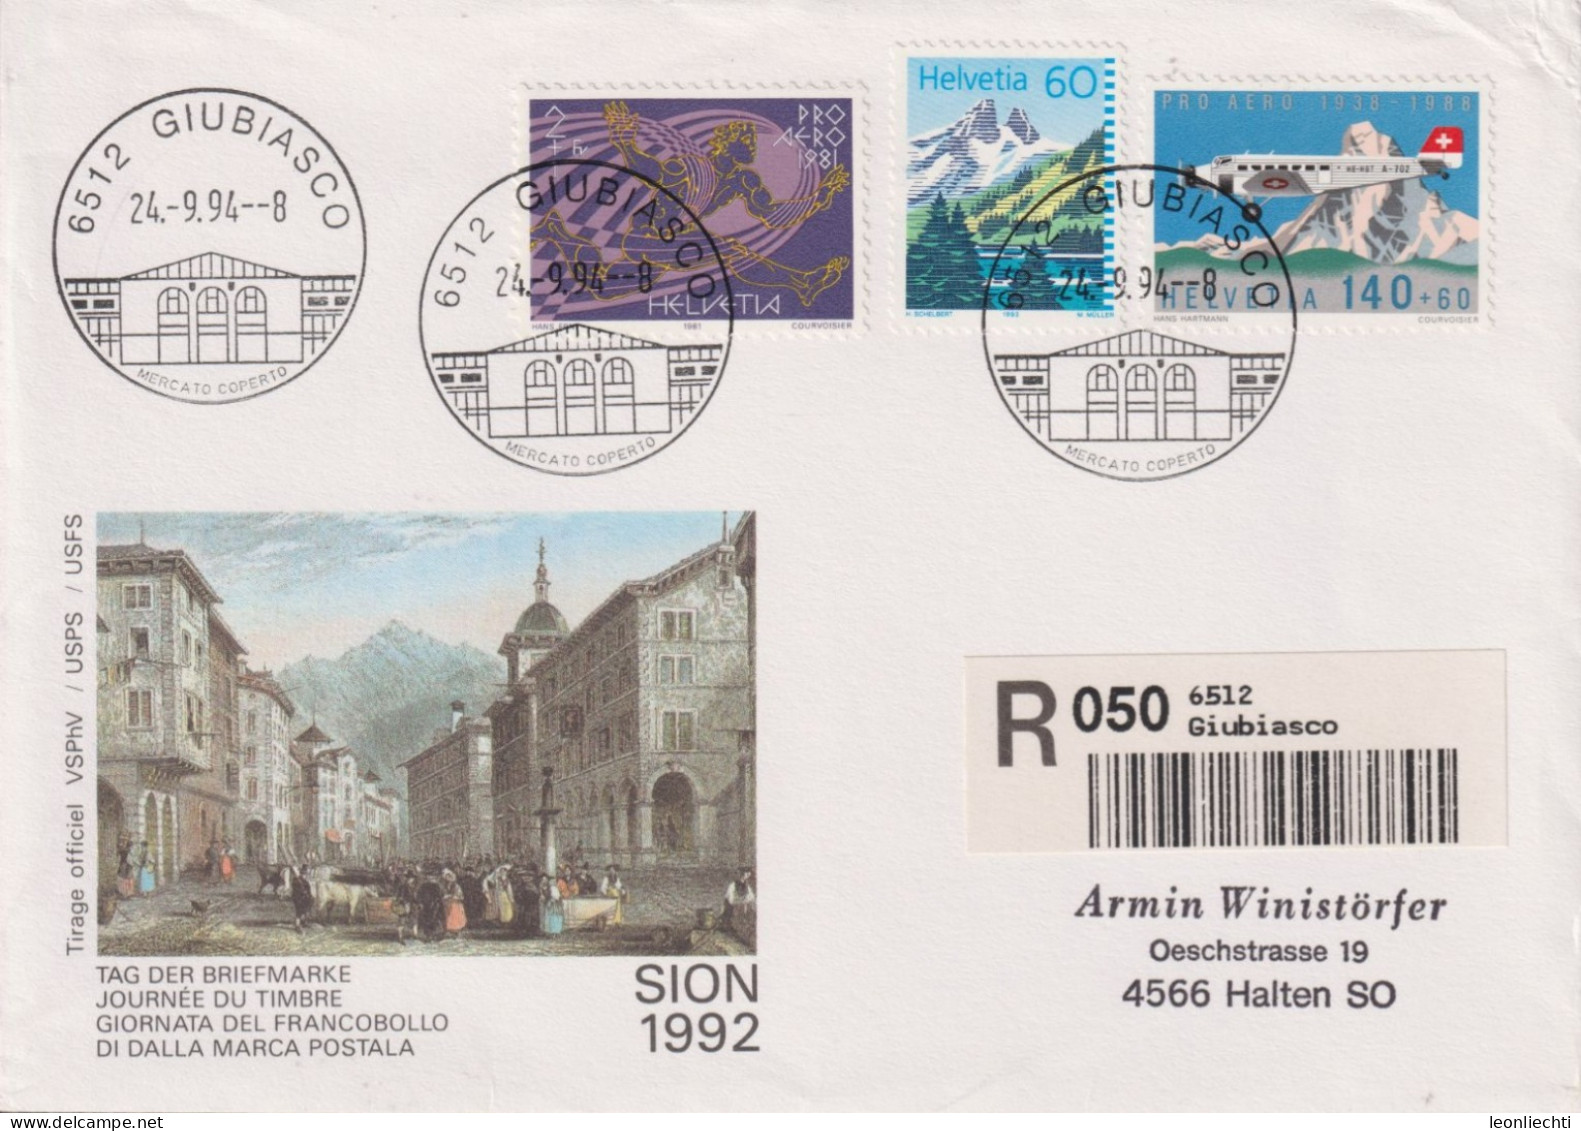 1994 Schweiz Tag Der Briefmarke Sion, Zum:CH F49+W48+837, Mi:CH 1369+1196+1489, ° 6512 GIUBIASSCO - Brieven En Documenten